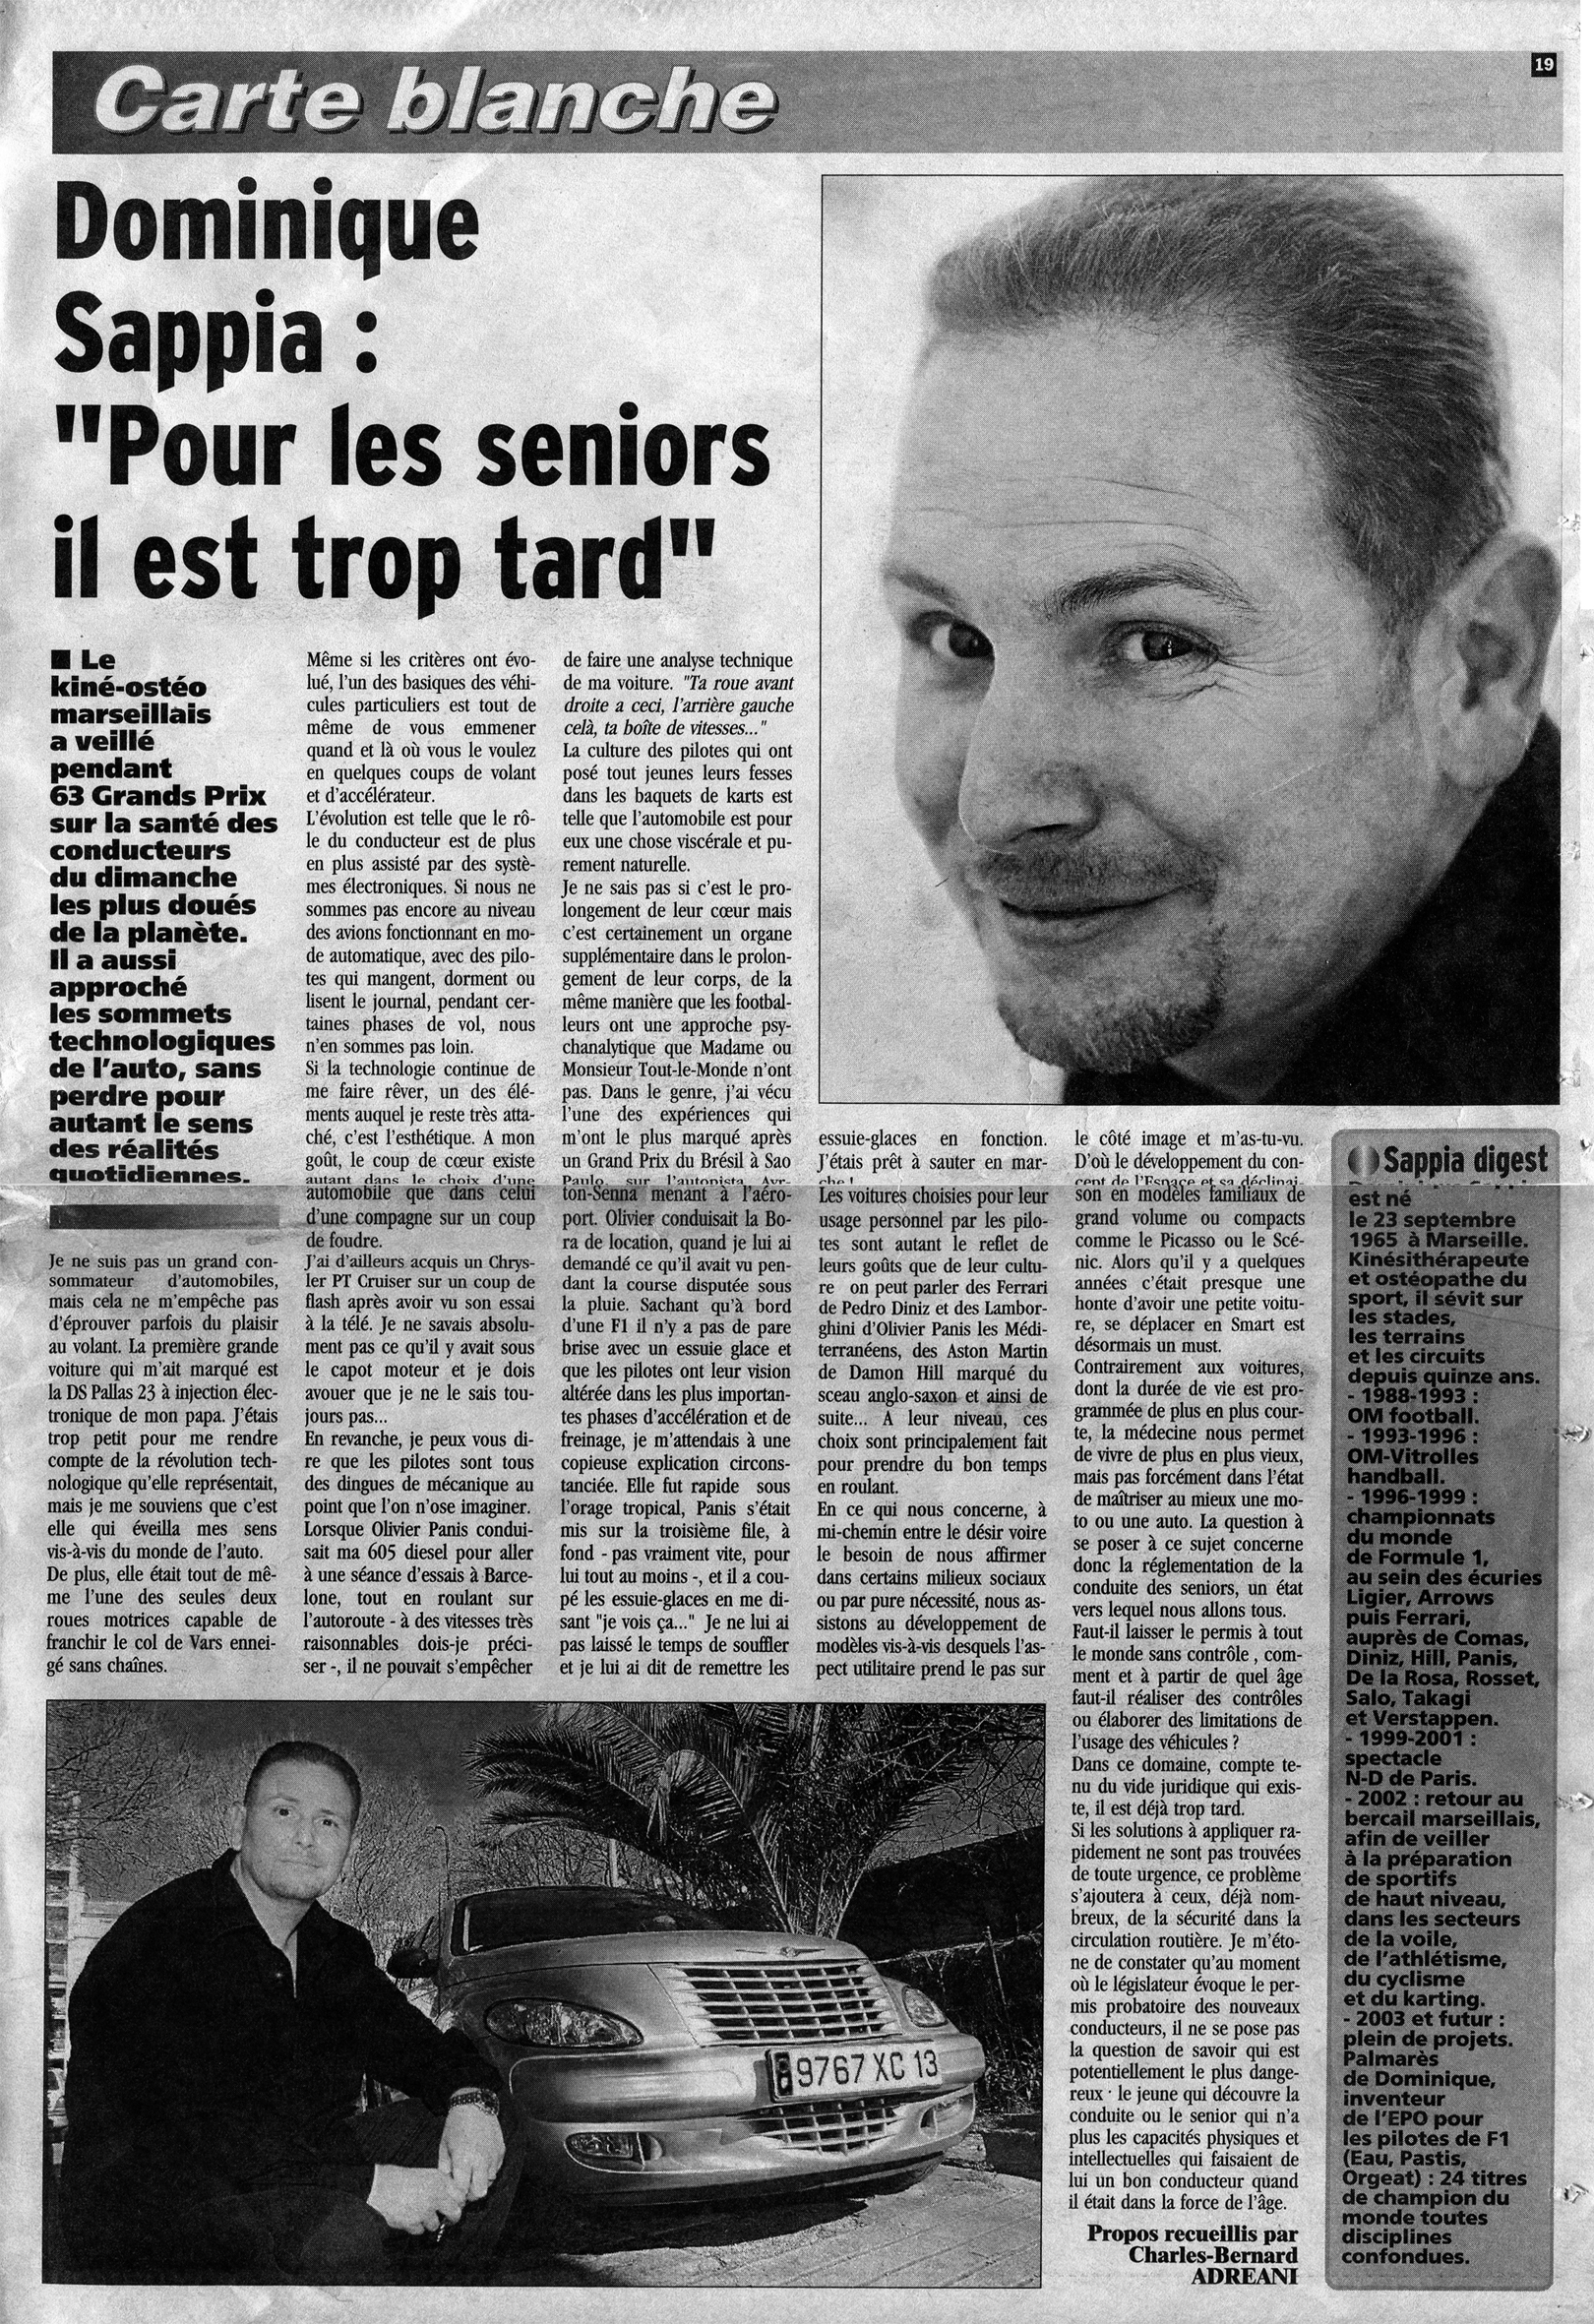 Dominique Sappia "pour les seniors il est déjà trop tard". La Provence de l'auto. 19.03.2003.